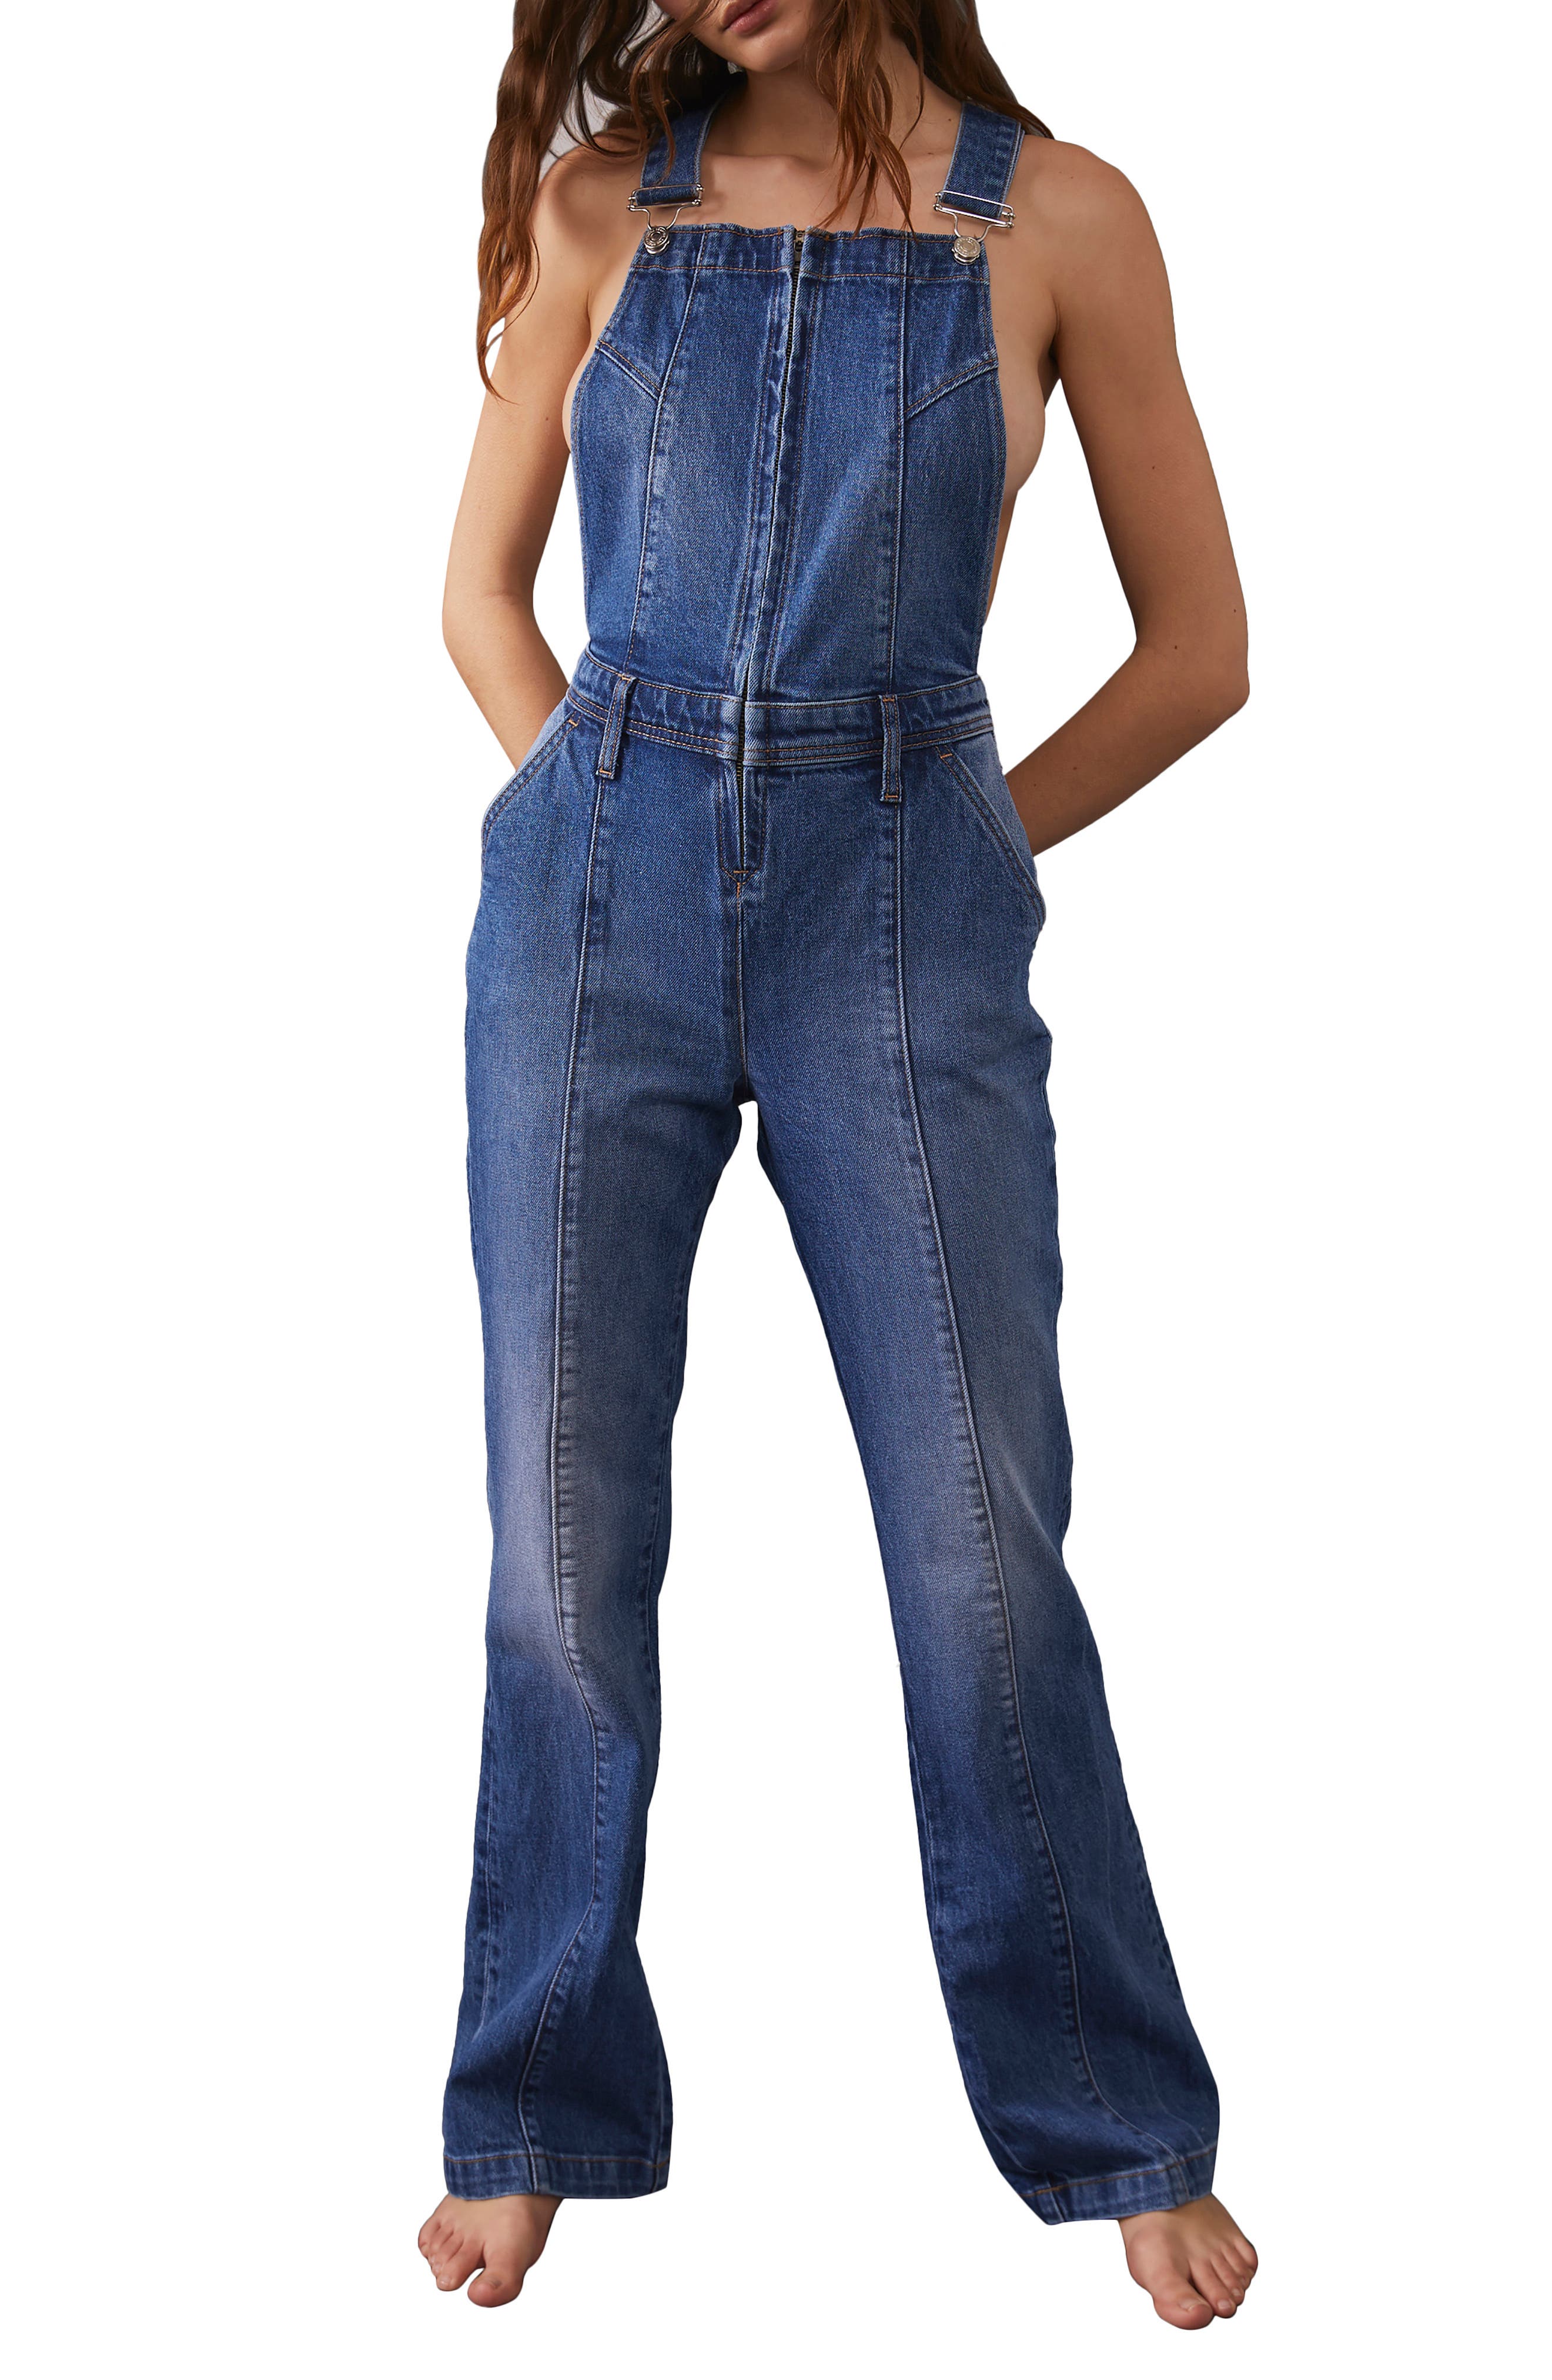 XS/S/M/L/XL Women's Camouflage Long Sleeve Denim Jeans Jumpsuit 